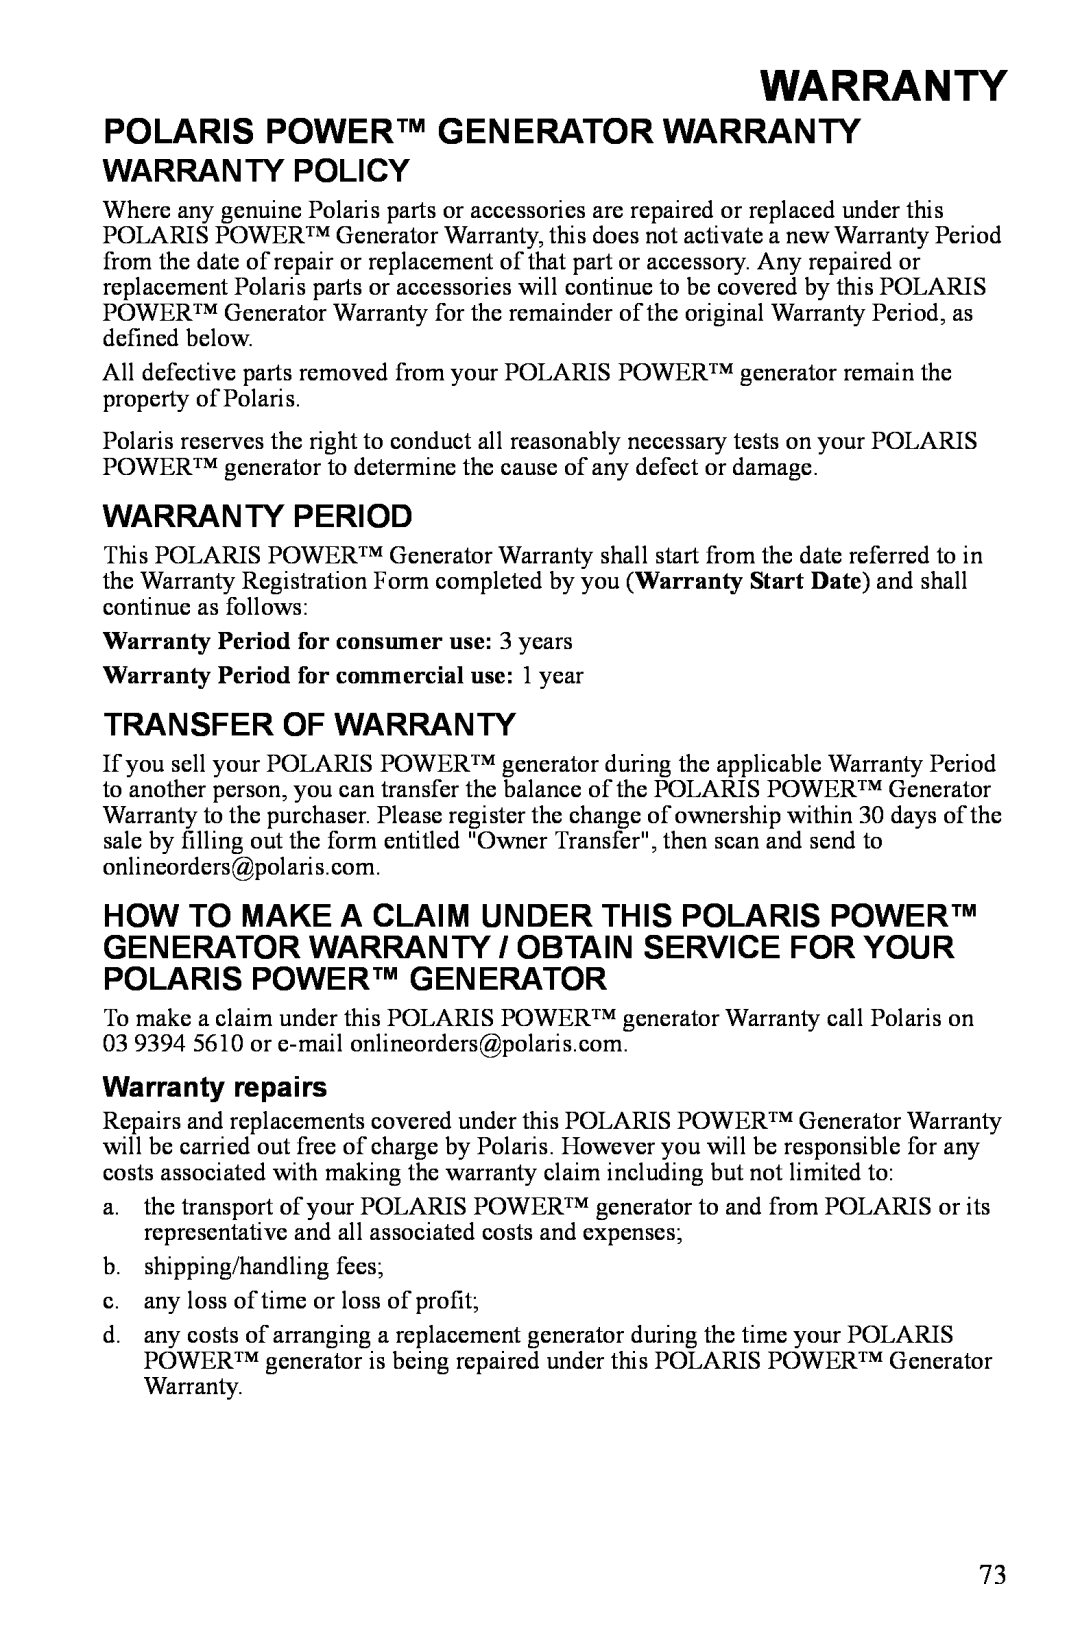 Polaris P3000iE manual Polaris Power Generator Warranty, Warranty Policy, Warranty Period, Transfer Of Warranty 